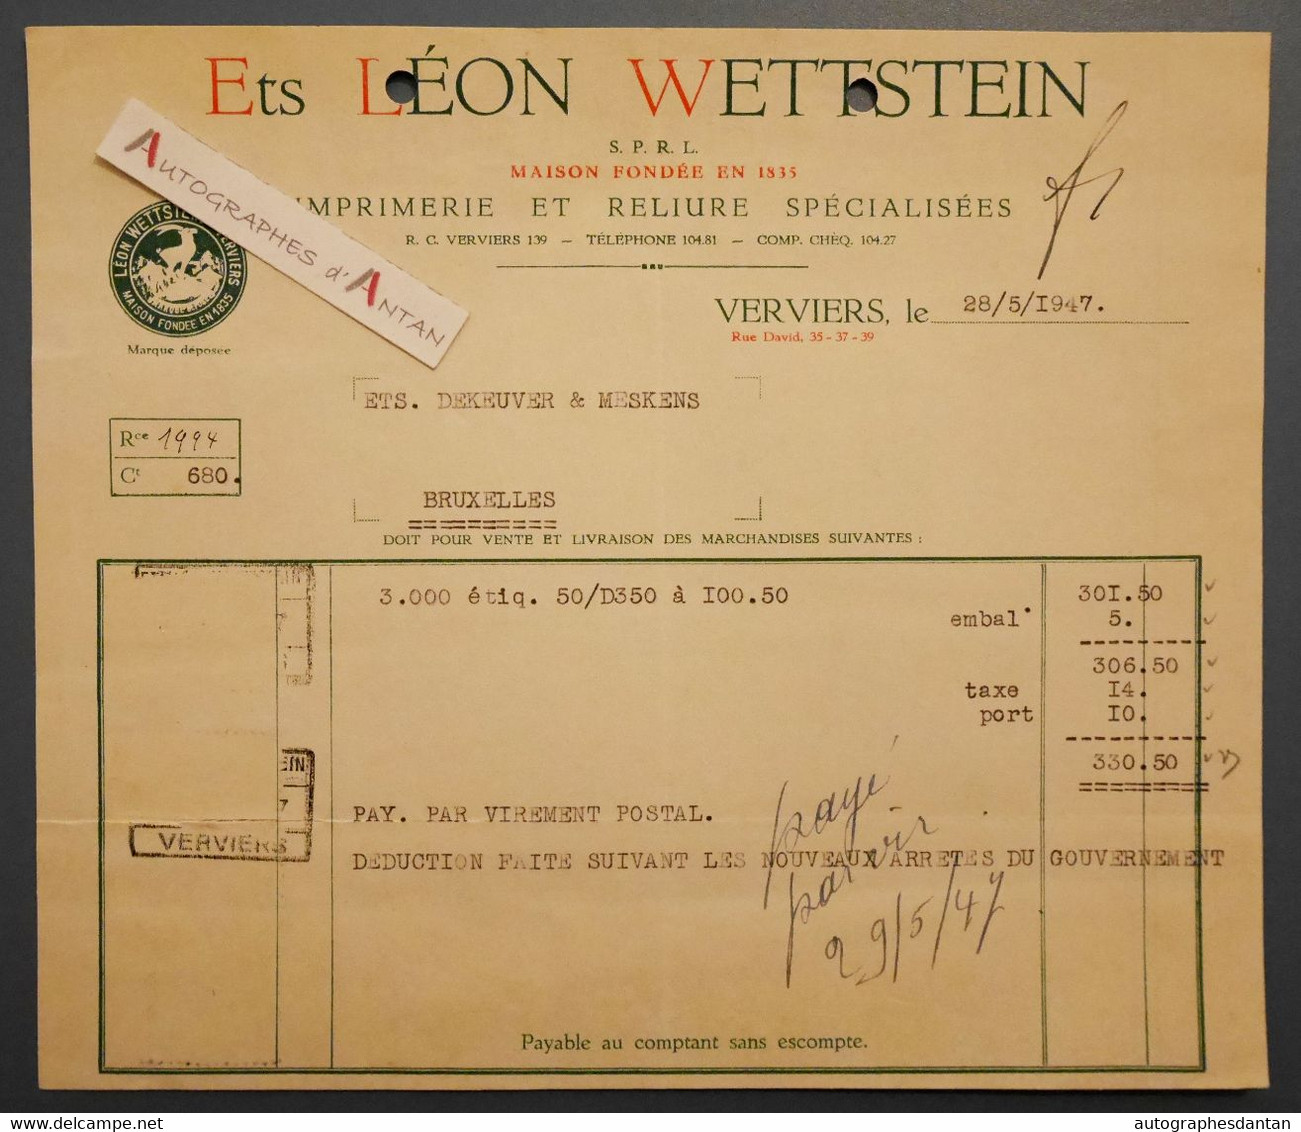 Léon WETTSTEIN Imprimerie & Reliure - VERVIERS - Facture 1947 > Ets Dekeuver Et Meskens - Belgique - Imprenta & Papelería